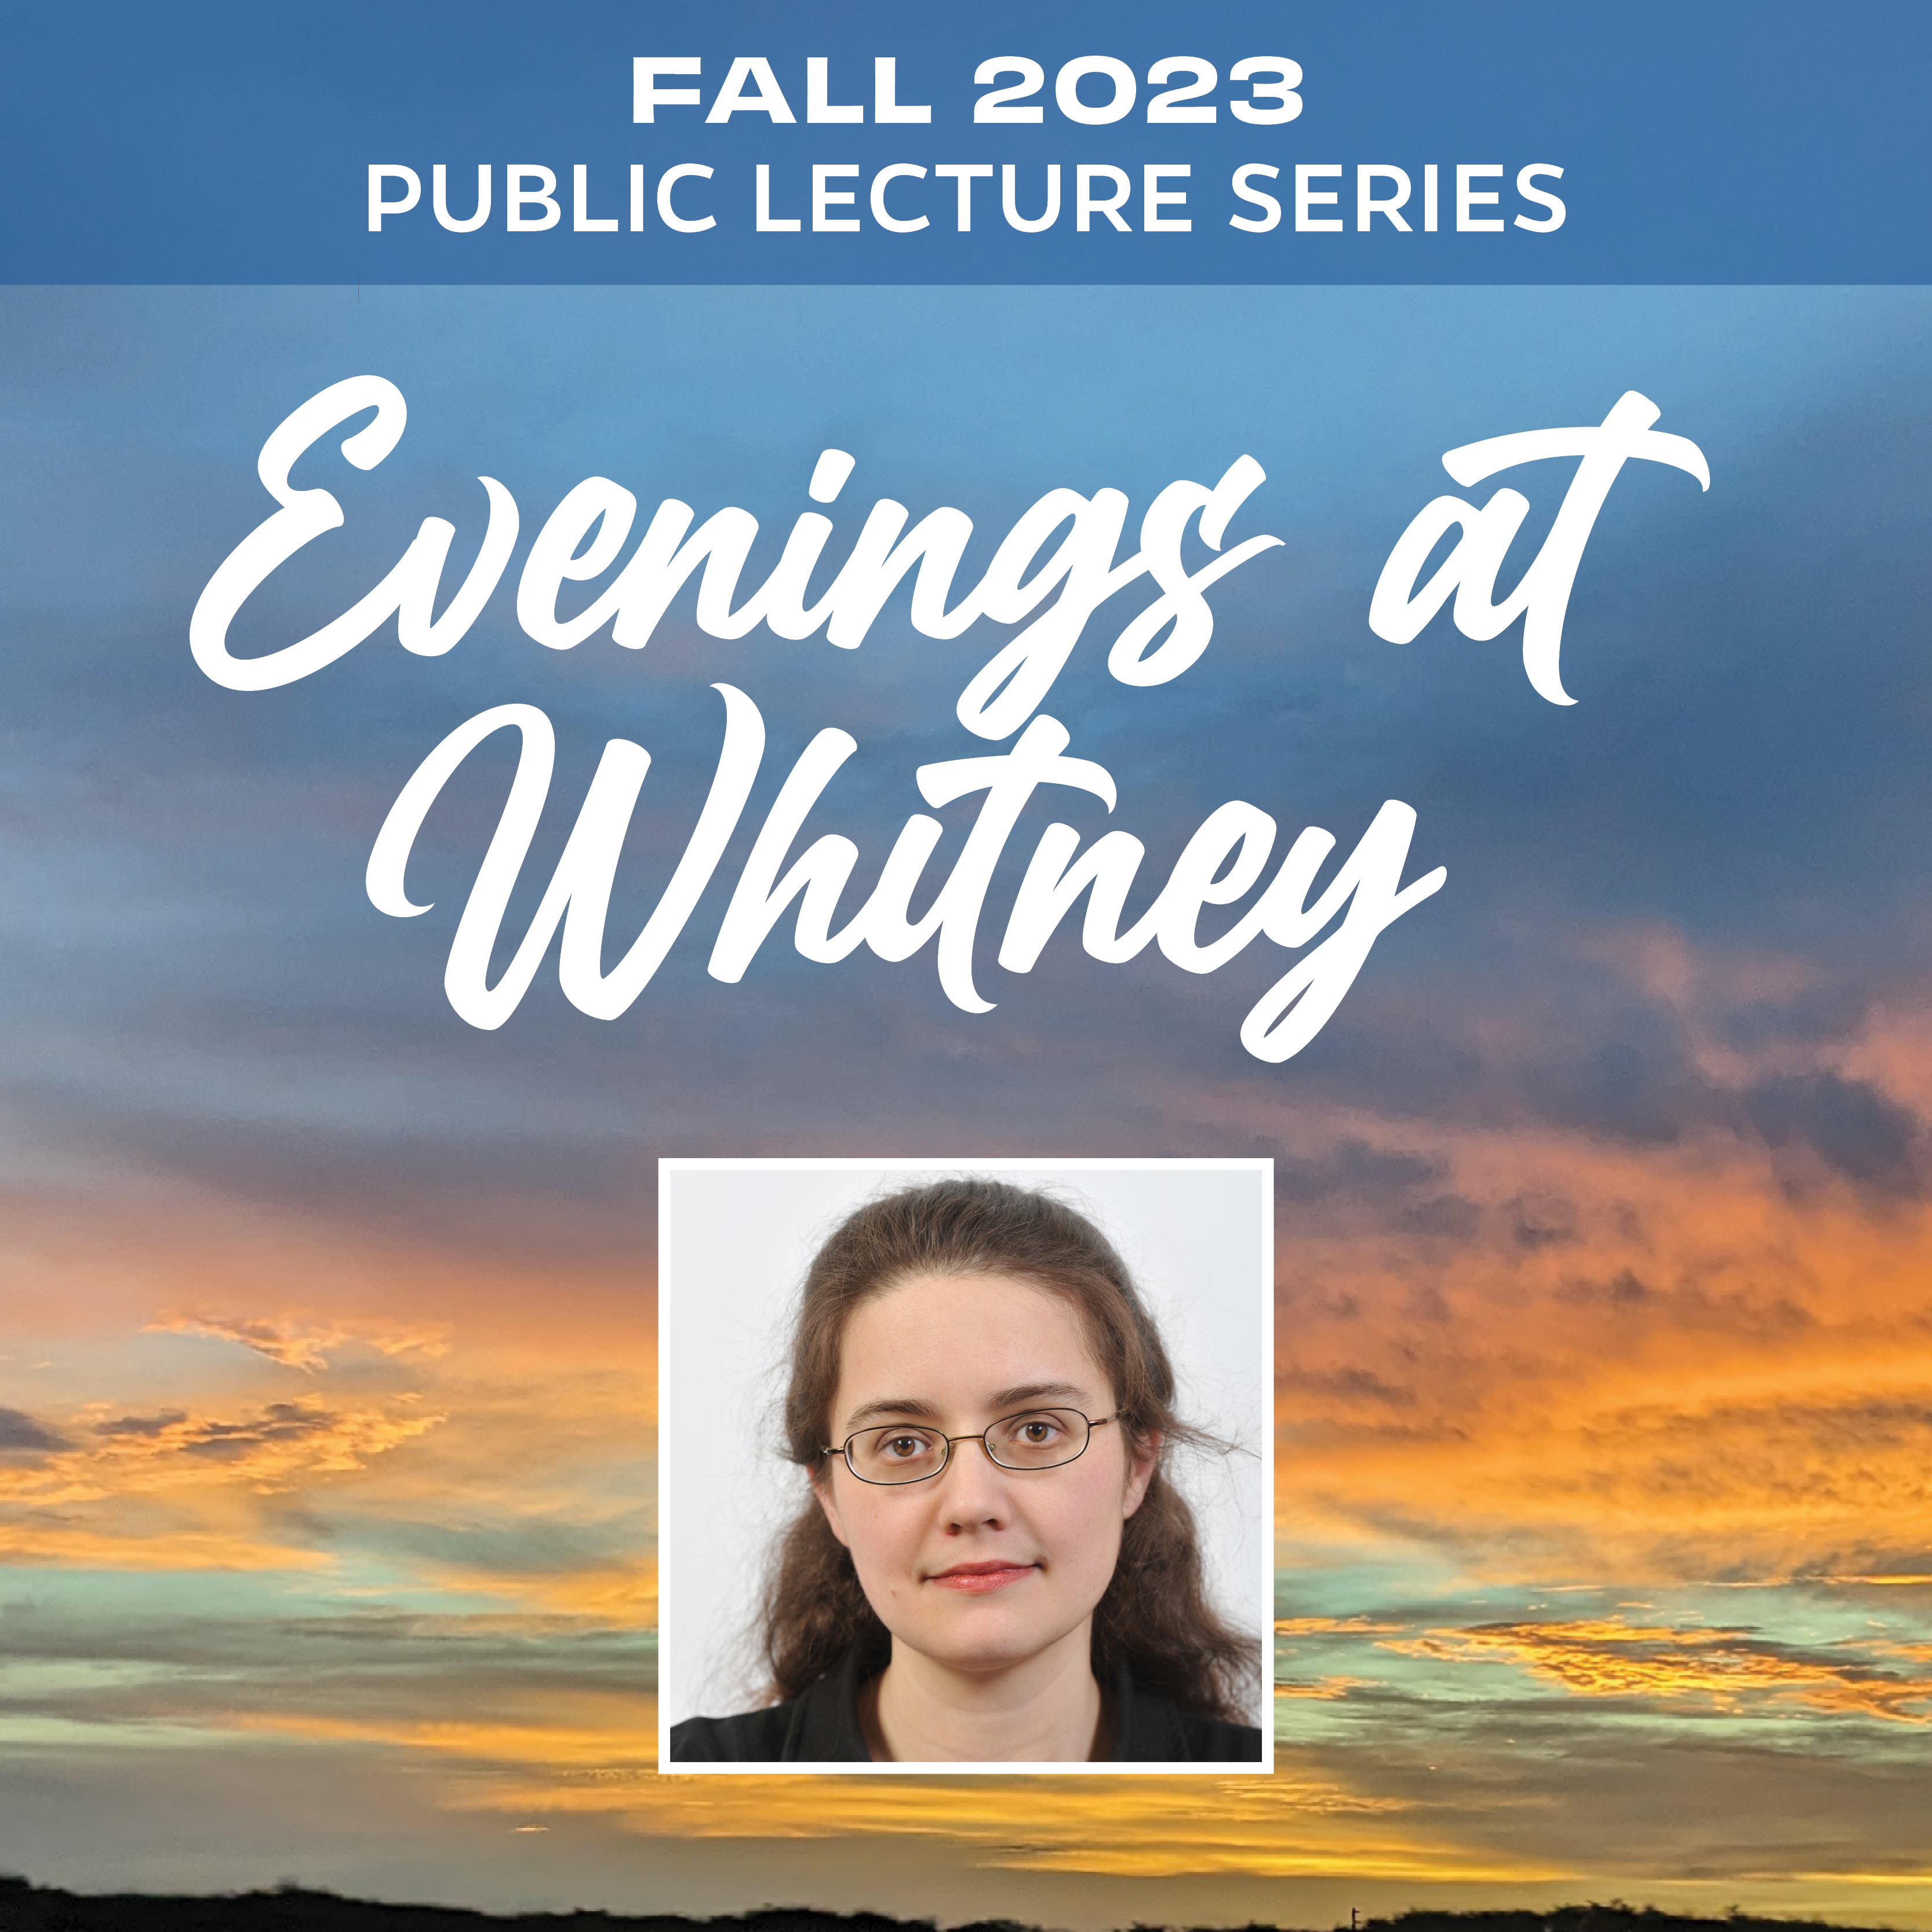 Evenings at Whitney September 14